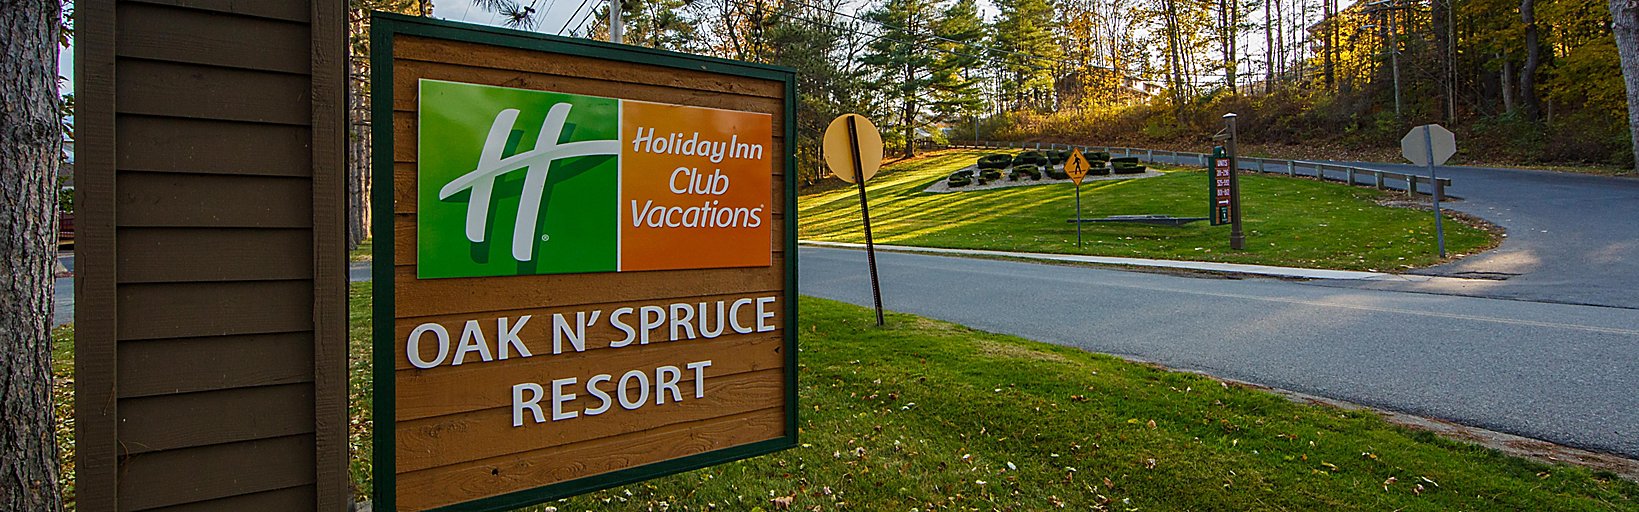 Holiday Inn Club Vacations Oak n' Spruce Resort Hotel by IHG